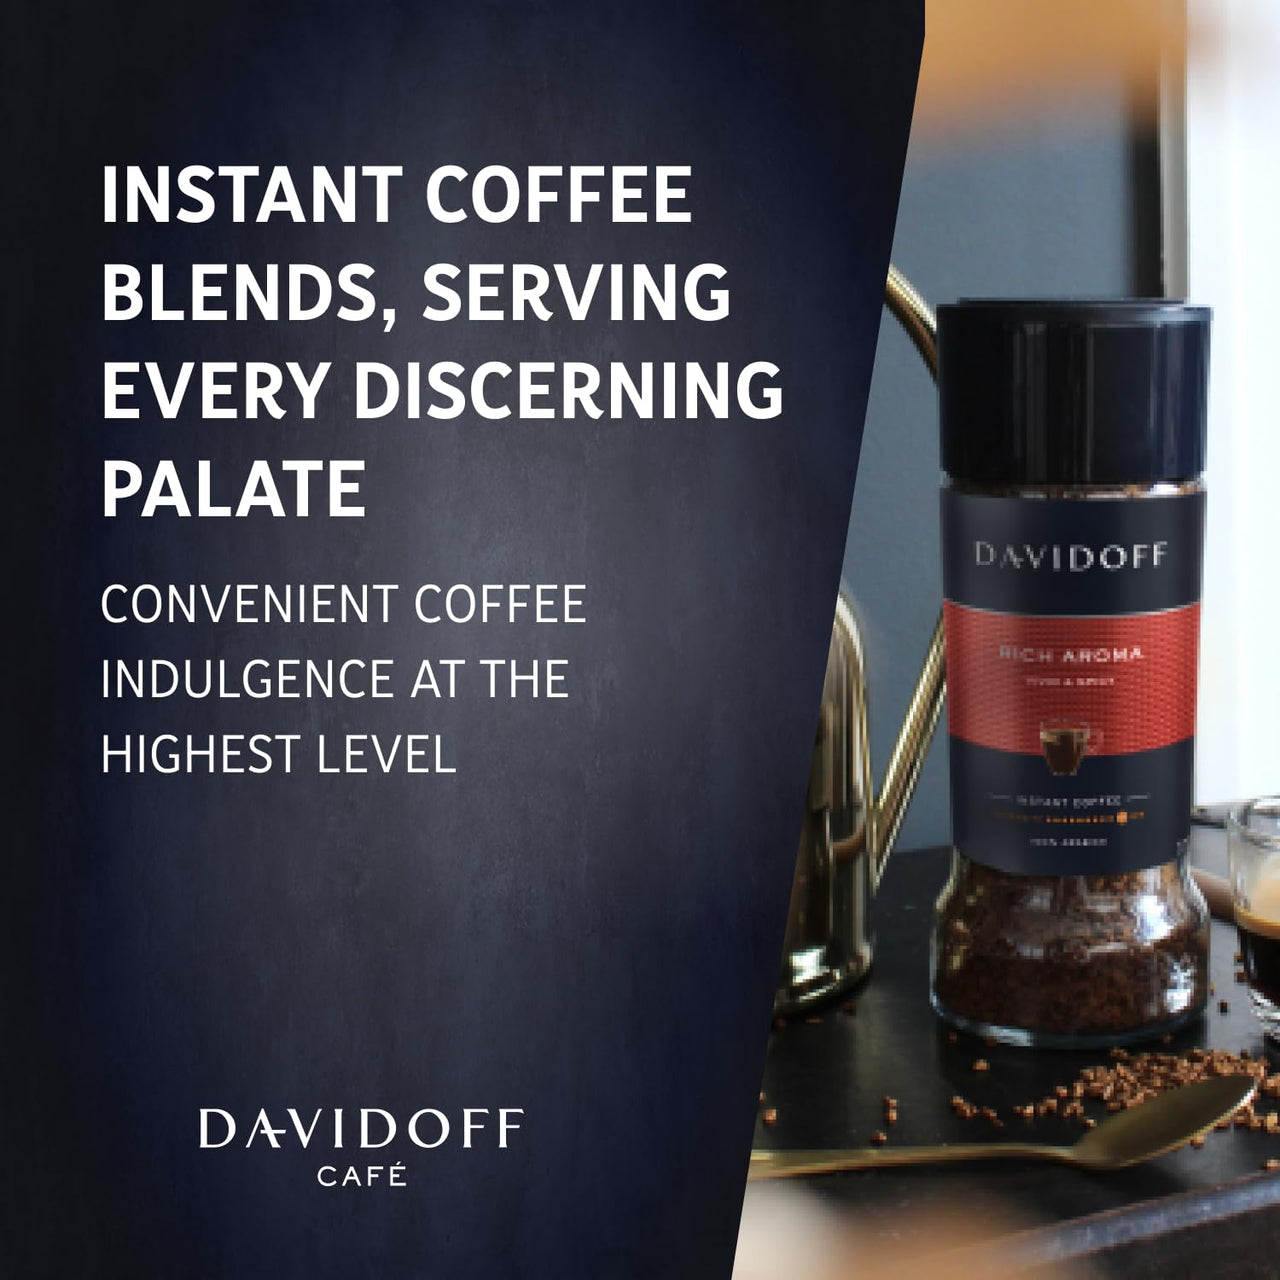 Davidoff- Coffee Rich Aroma,100g-Glass Bottle